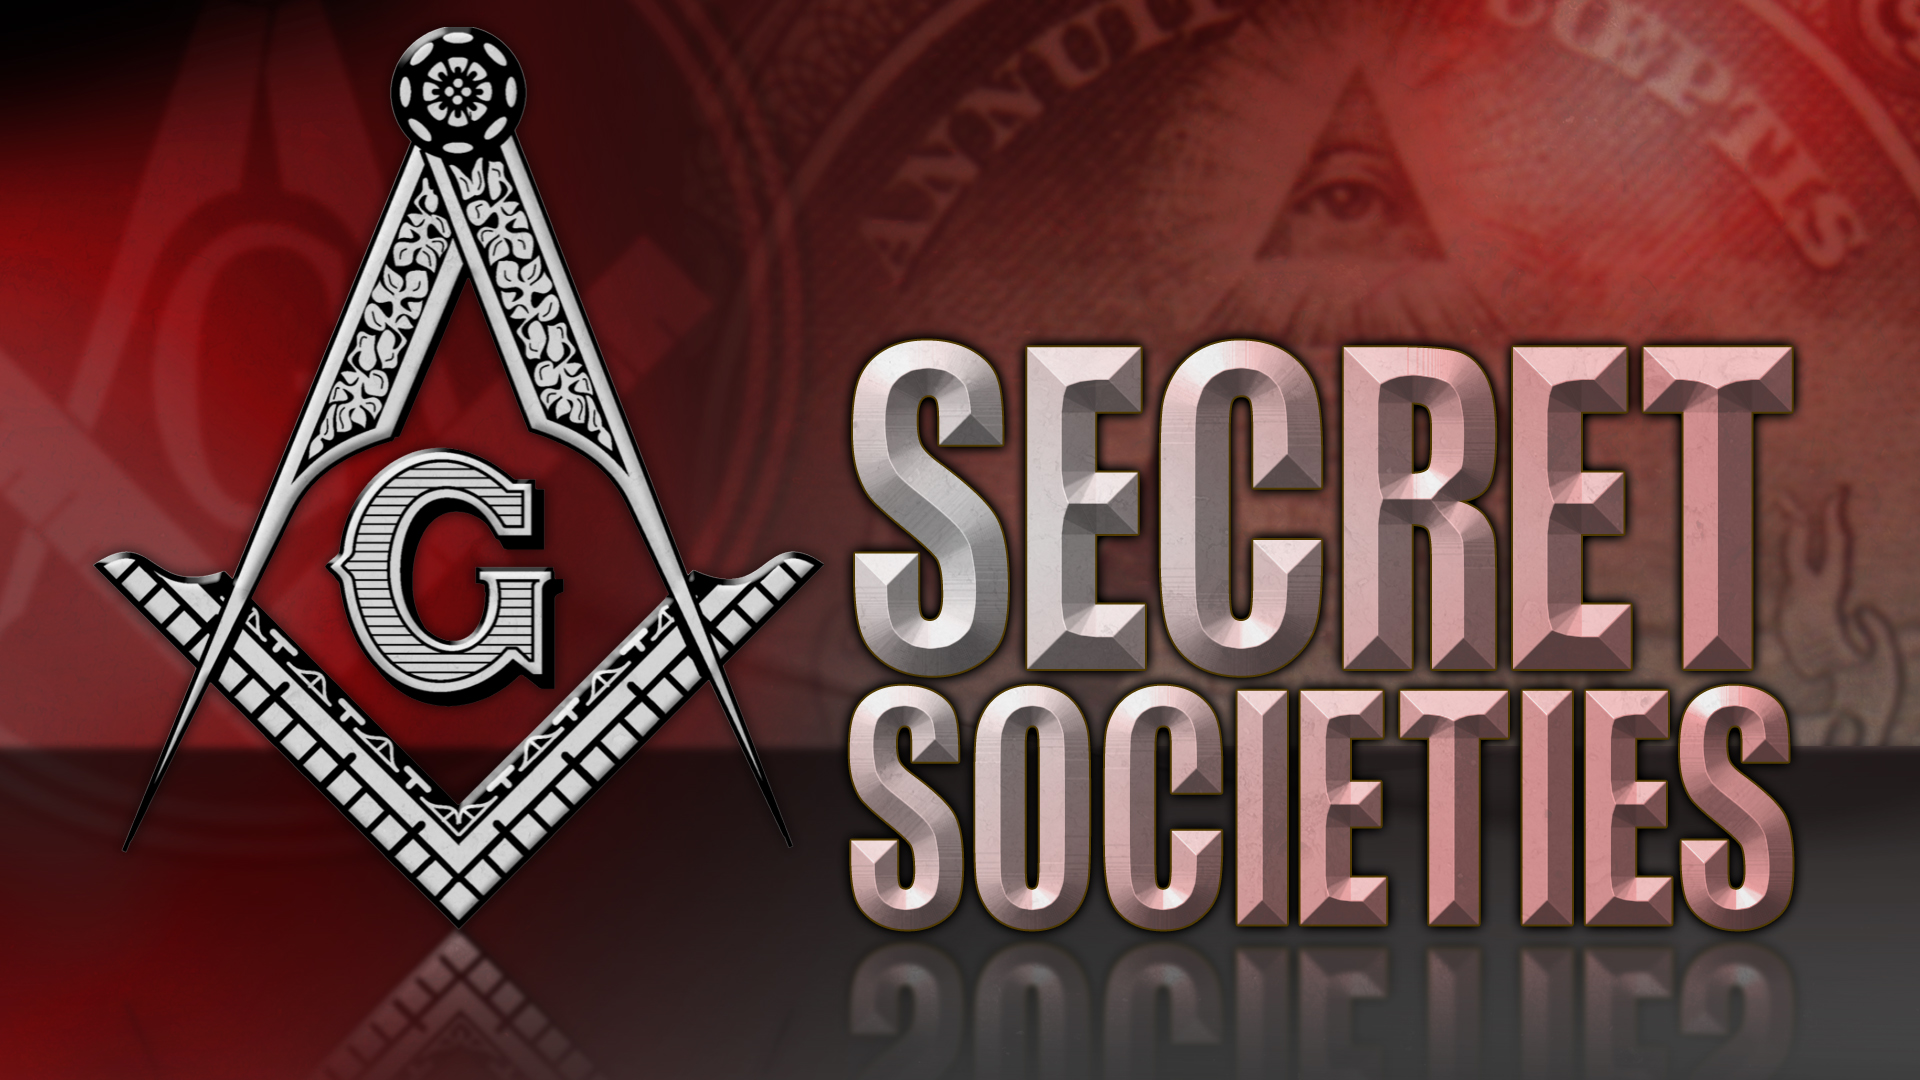 Prayer for Secret Societies